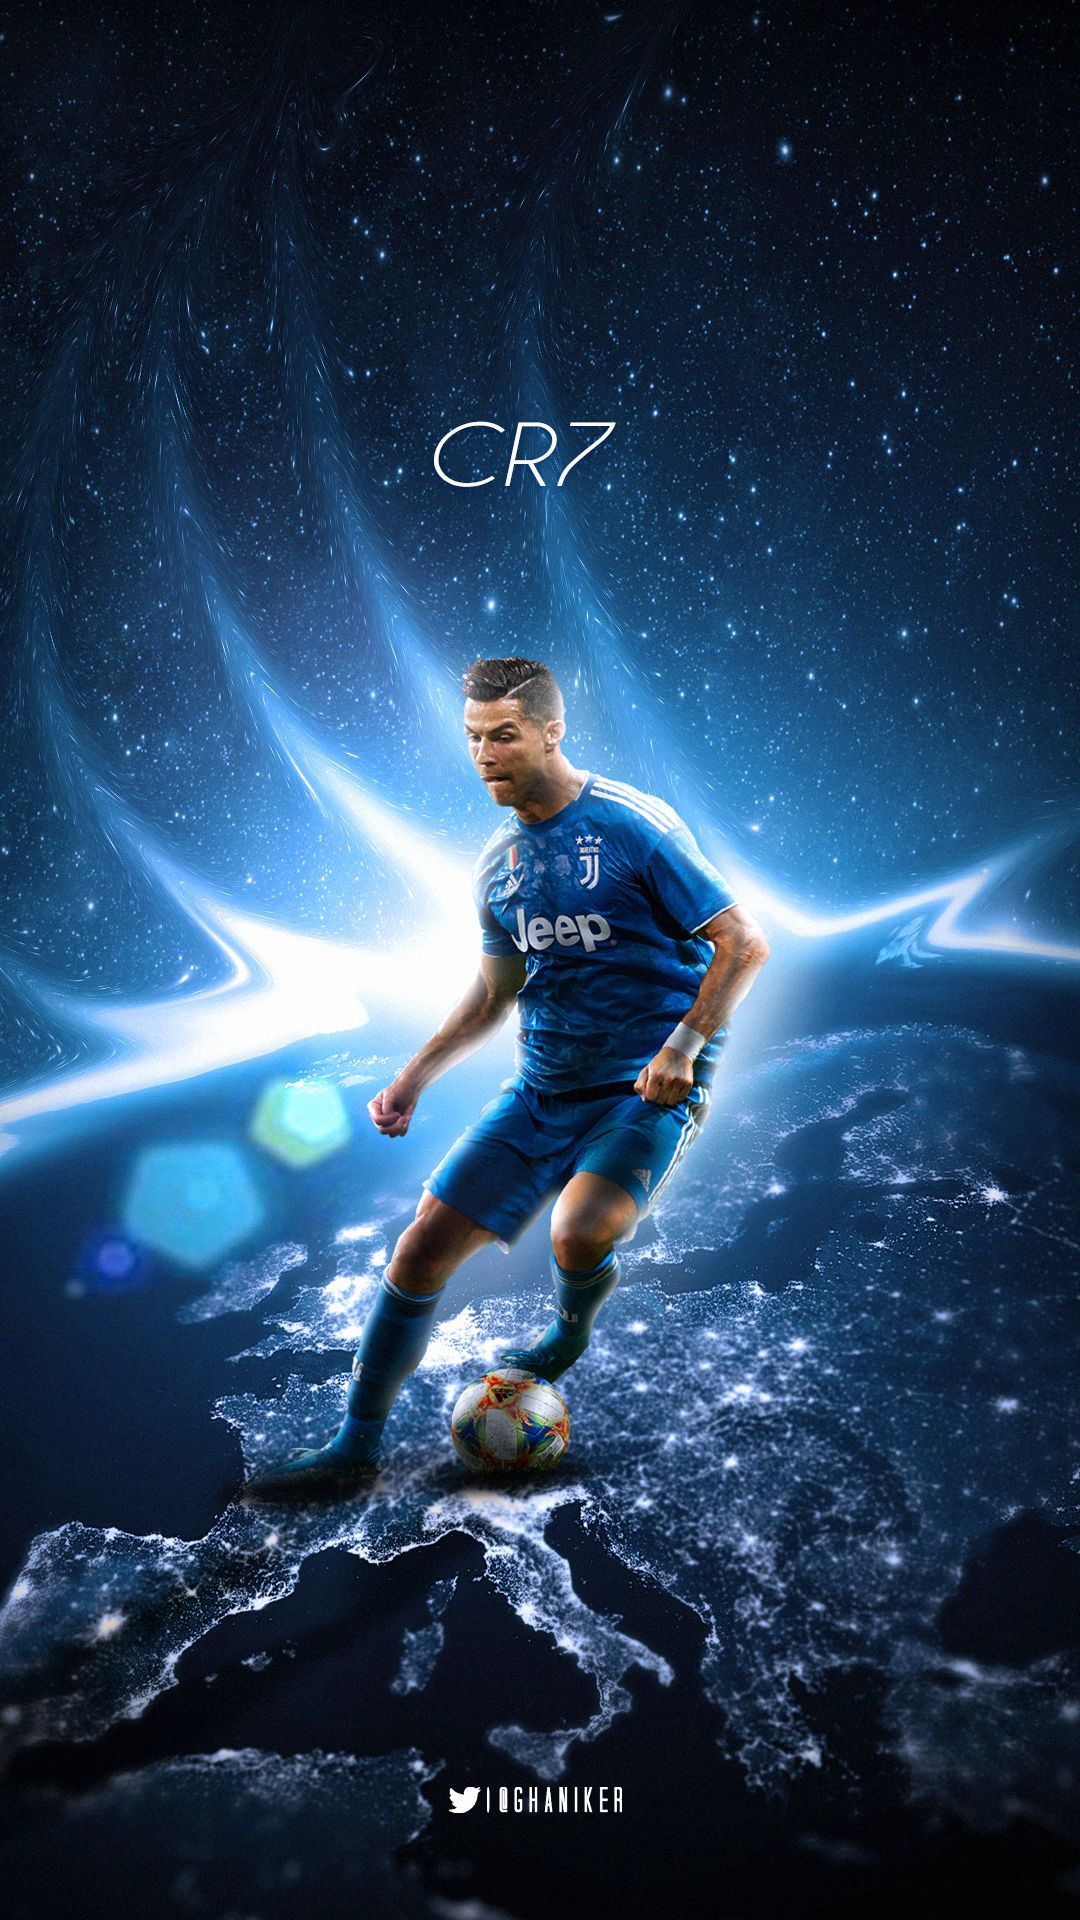 Sports, Cristiano Ronaldo, Soccer